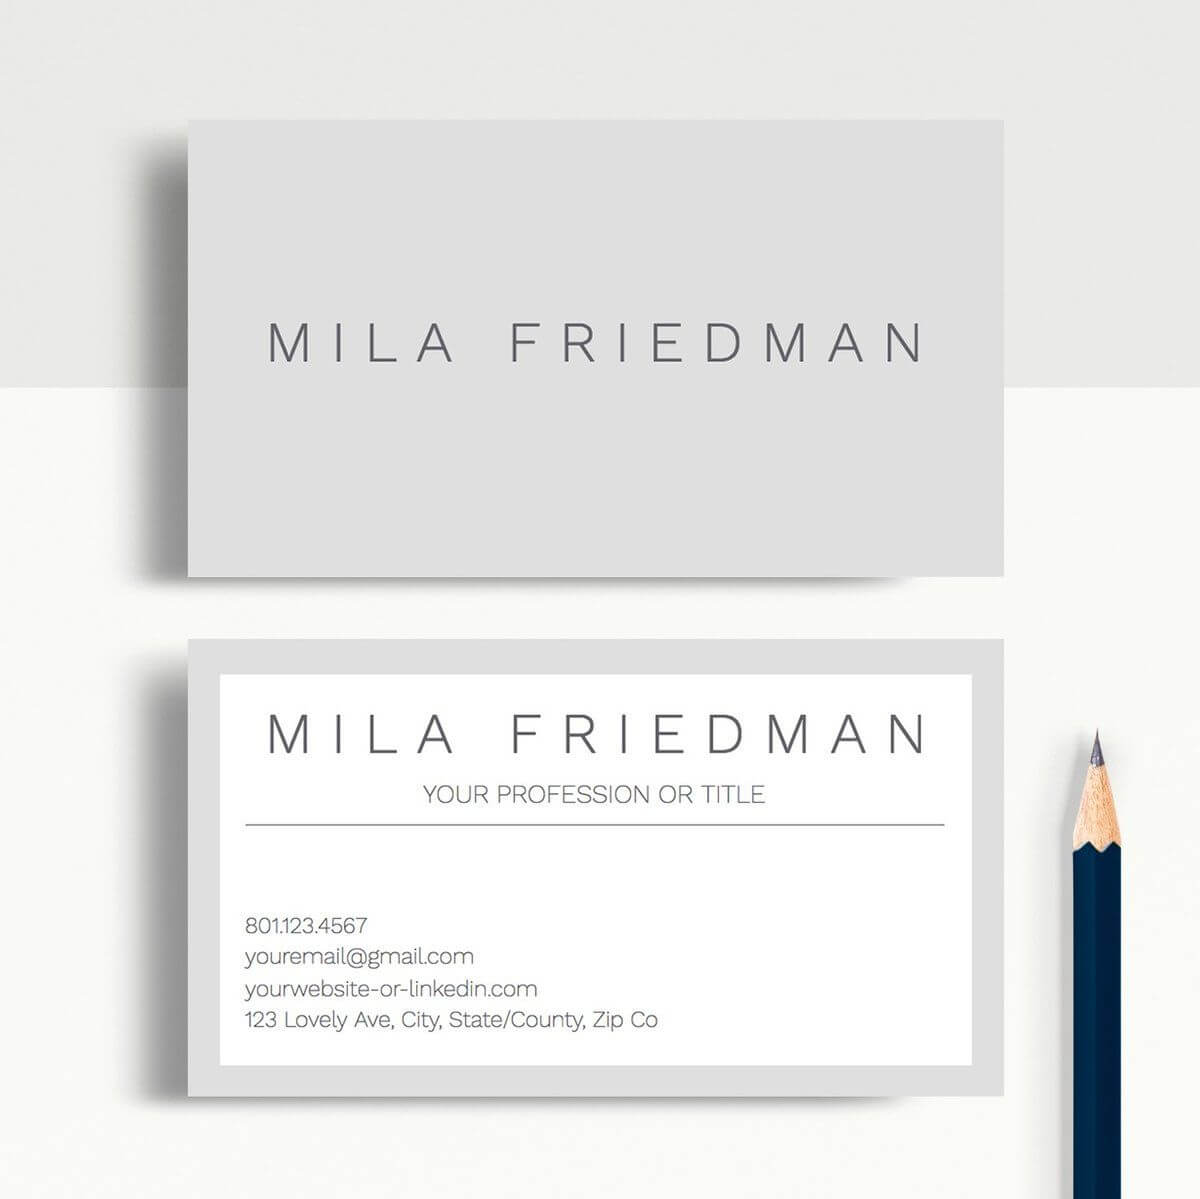 Mila Friedman | Google Docs Professional Business Cards Within Google Docs Business Card Template